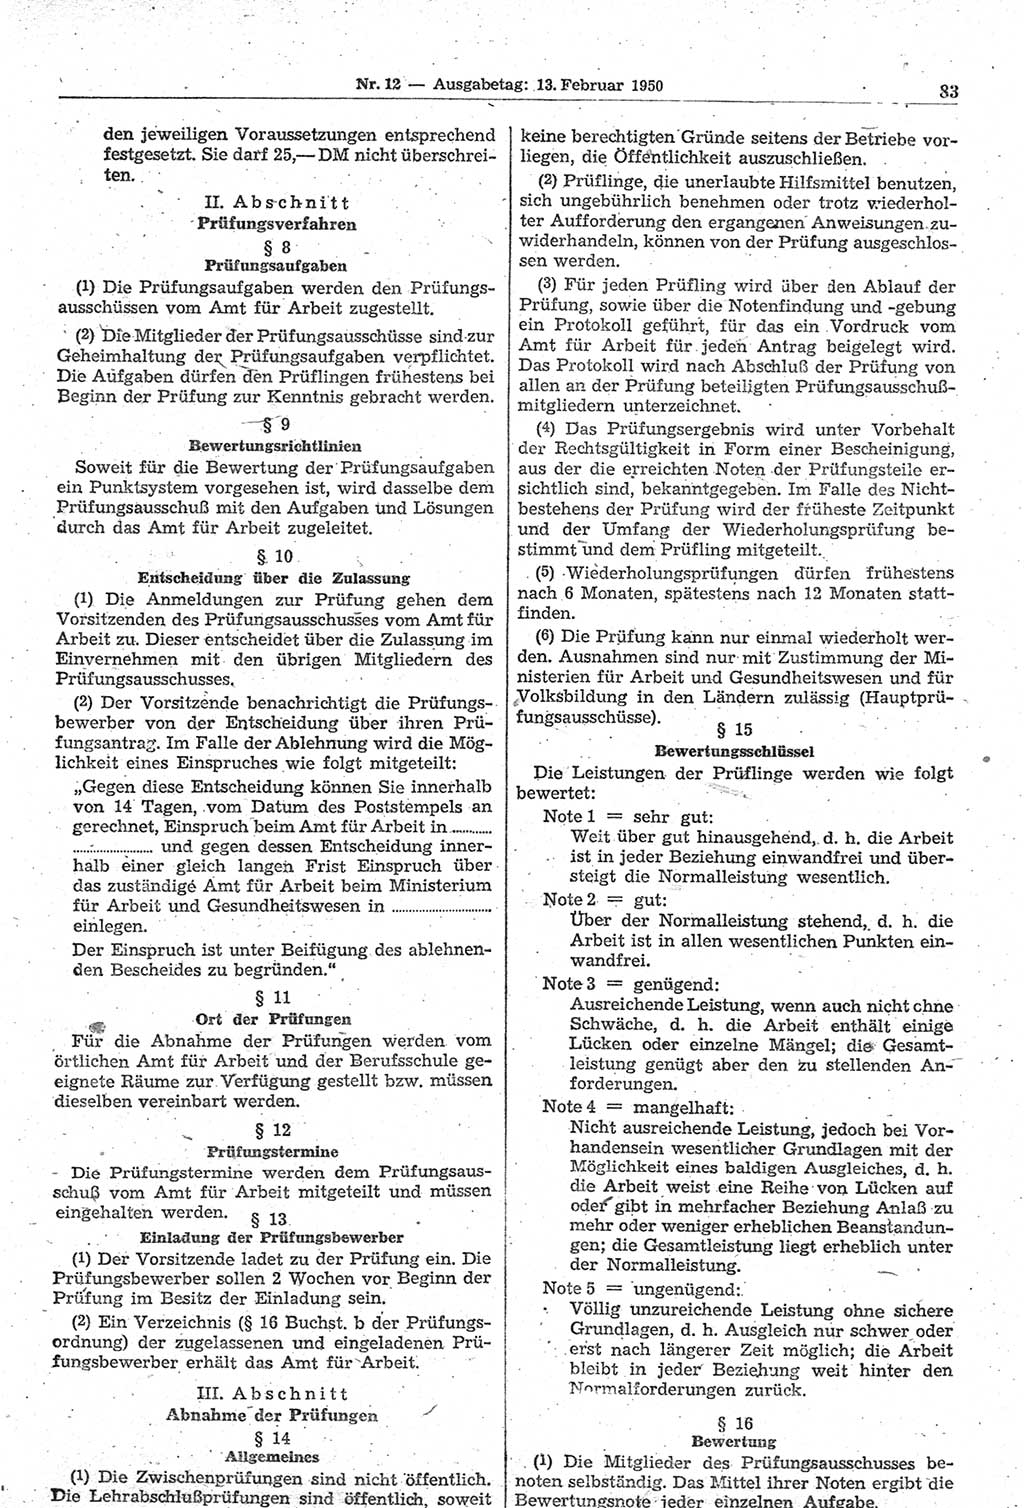 Gesetzblatt (GBl.) der Deutschen Demokratischen Republik (DDR) 1950, Seite 83 (GBl. DDR 1950, S. 83)